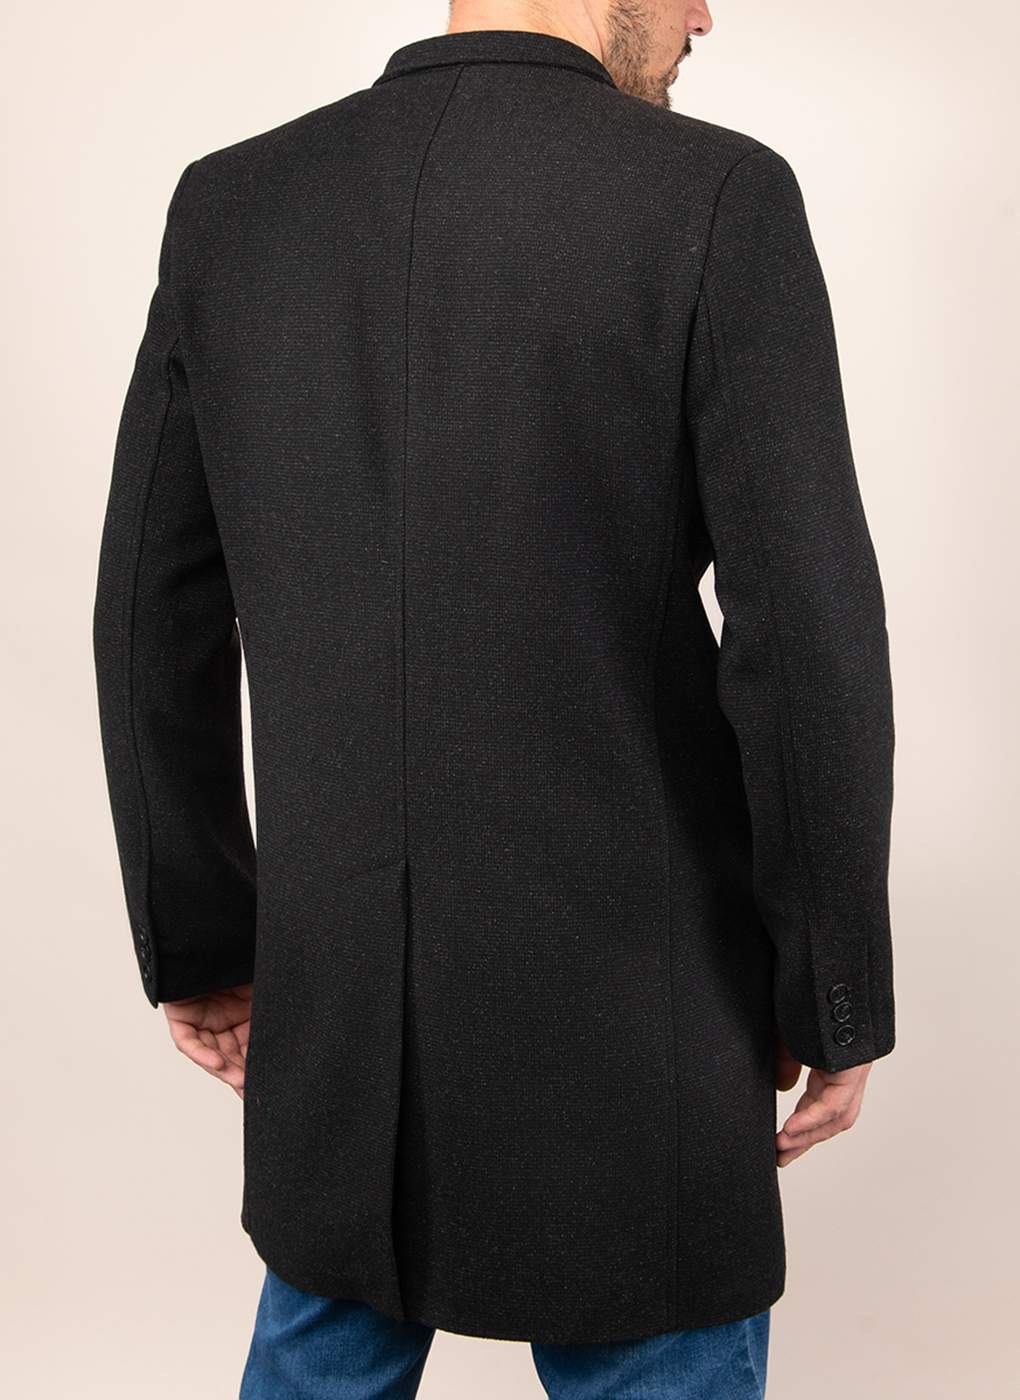 Пальто мужское Каляев 1515040 черное 48 RU